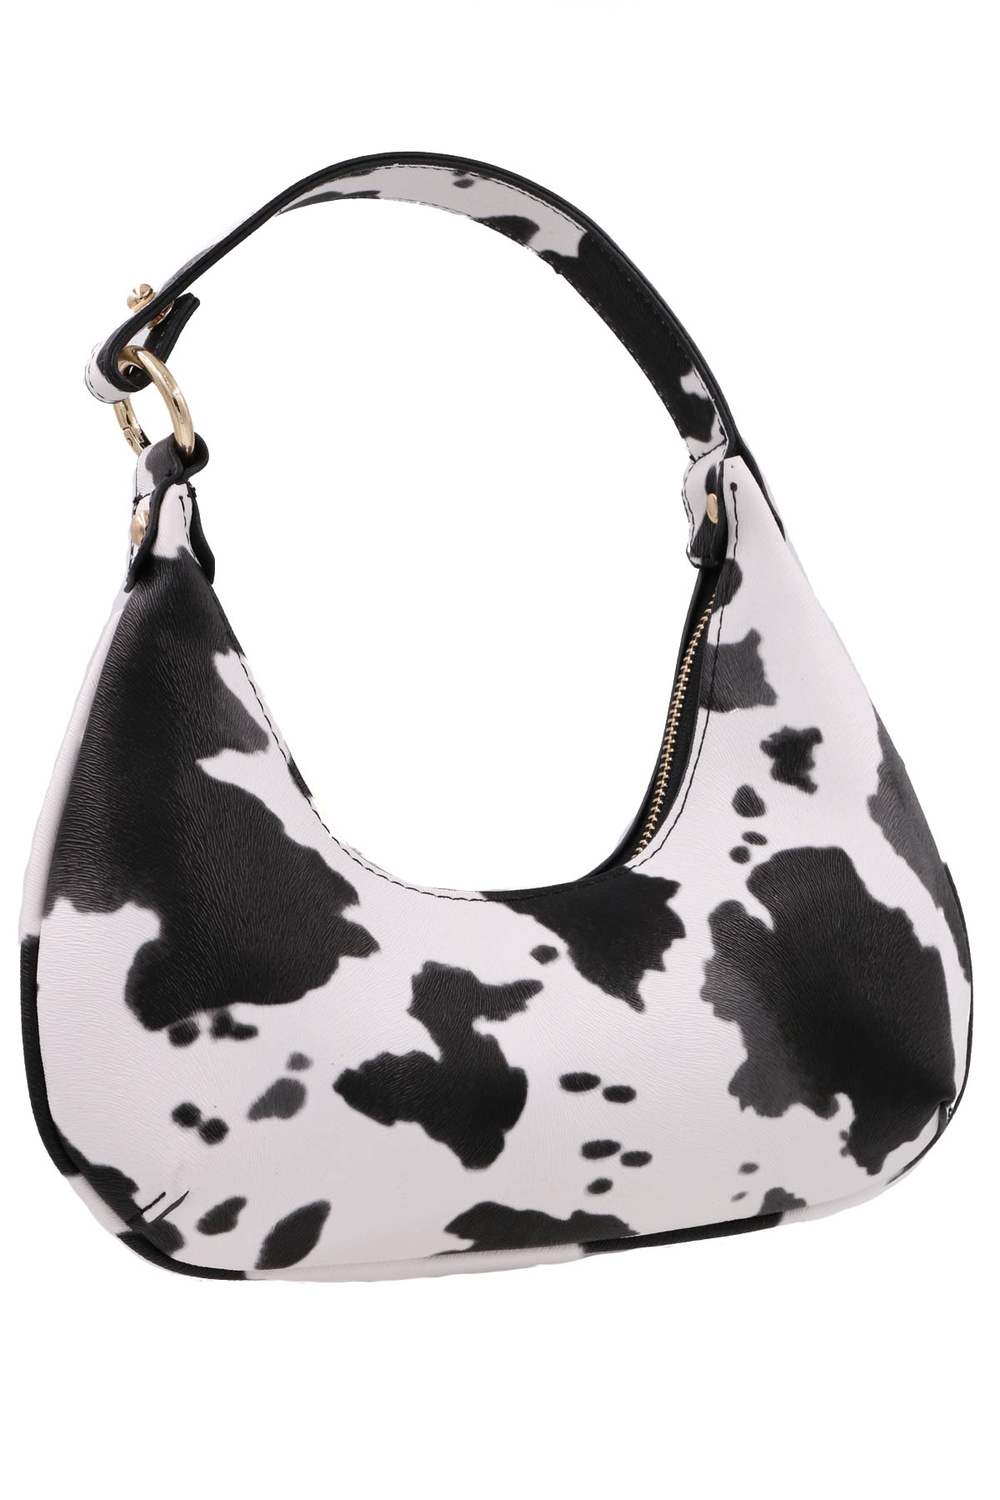 COW BLACK Cow Shoulder Bag - Bags & Clutches